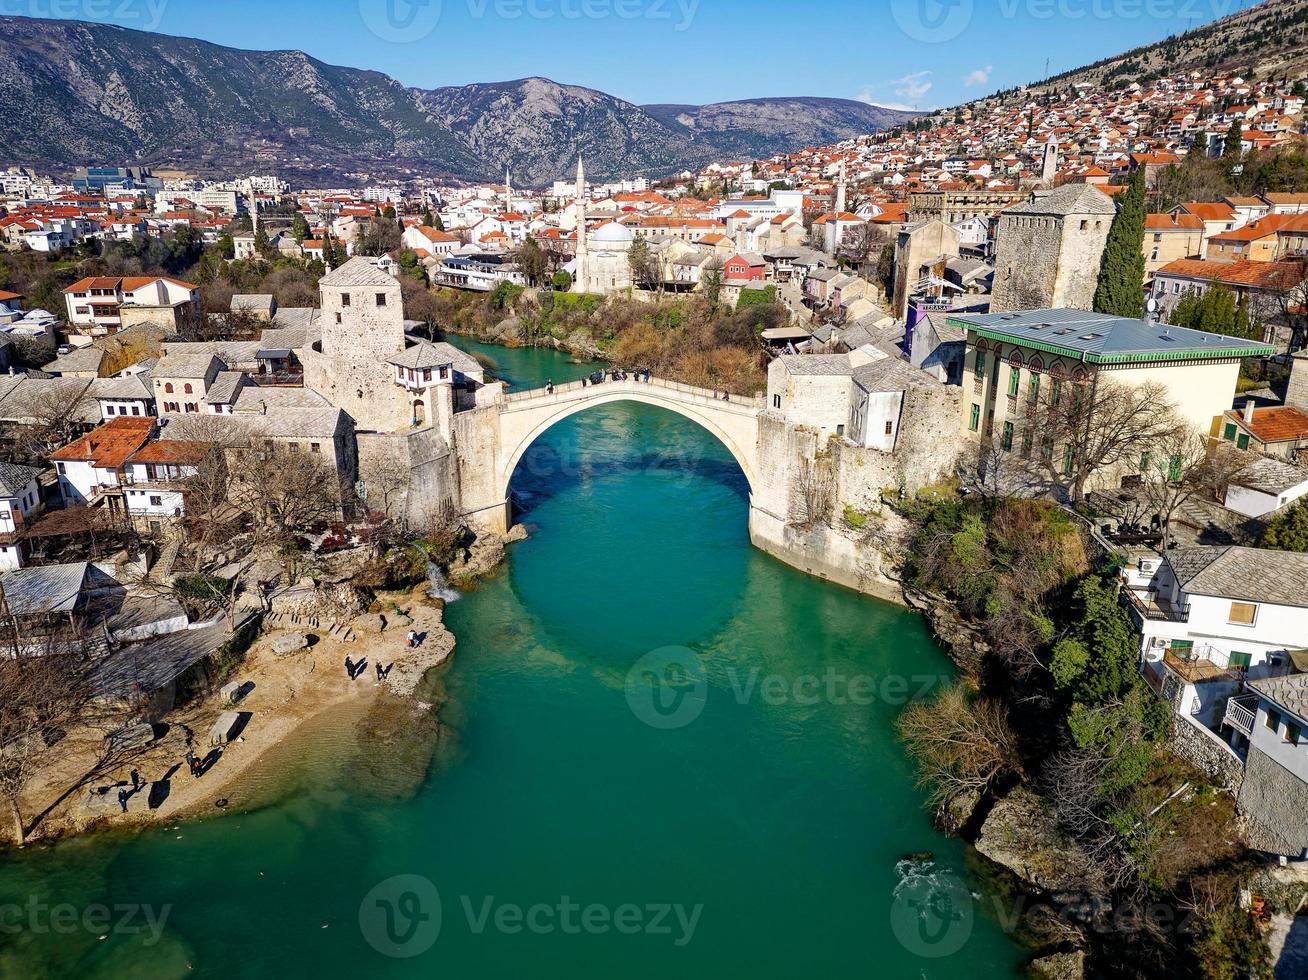 aereo fuco Visualizza di il vecchio ponte nel mostar città nel bosnia e erzegovina durante soleggiato giorno. blu turchese colori di neretva fiume. unesco mondo eredità luogo. persone a piedi al di sopra di il ponte. foto